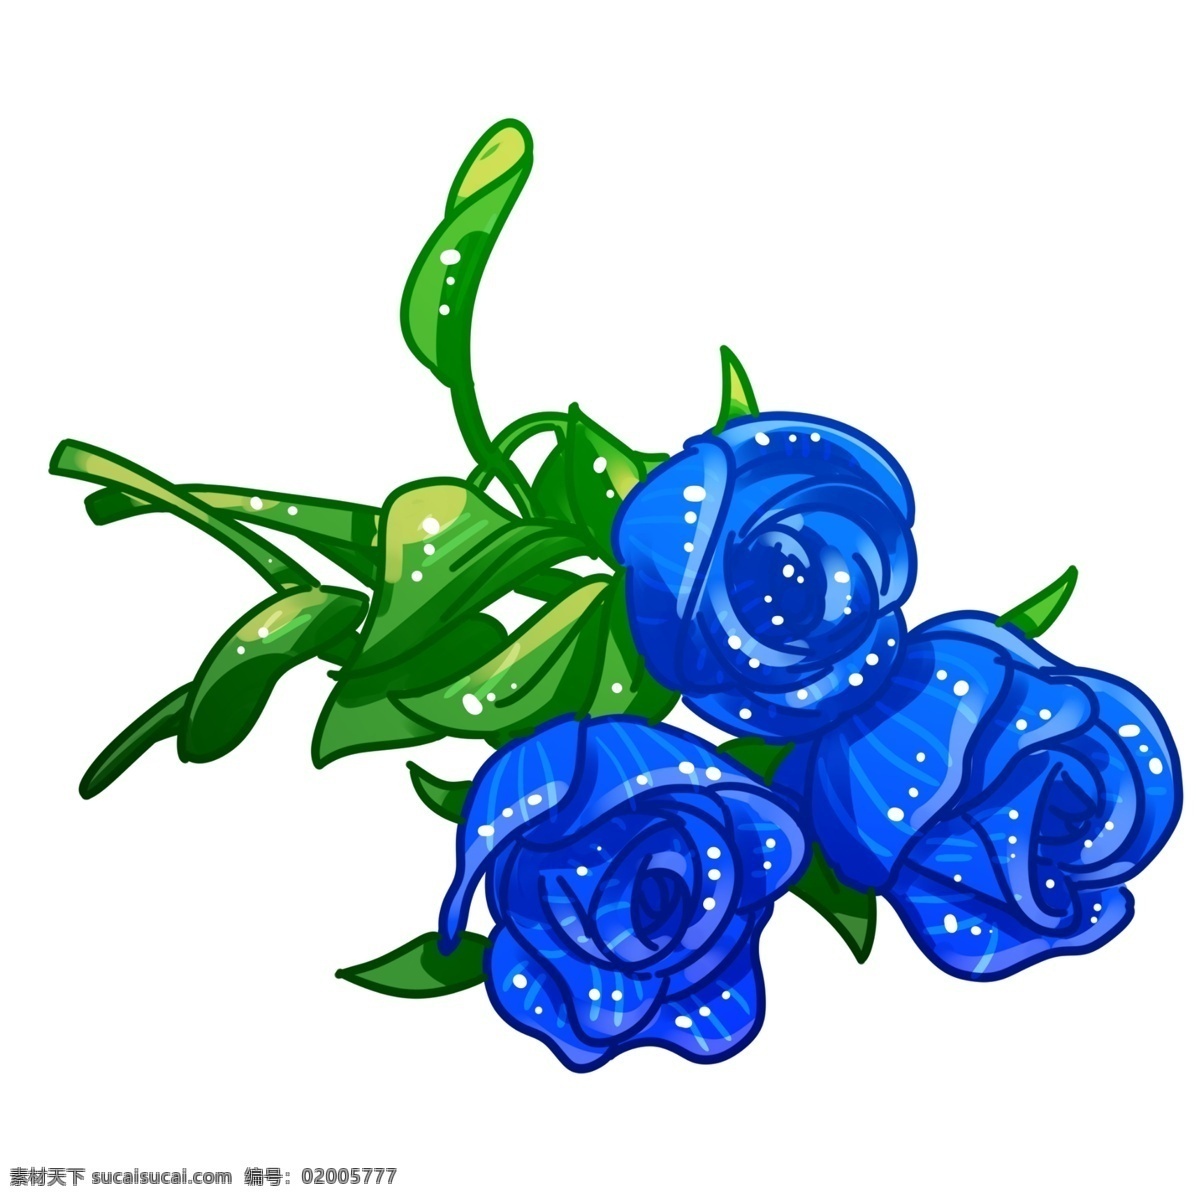 三 朵 蓝 玫瑰花 元素 三朵 蓝玫瑰 蓝色妖姬 三枝